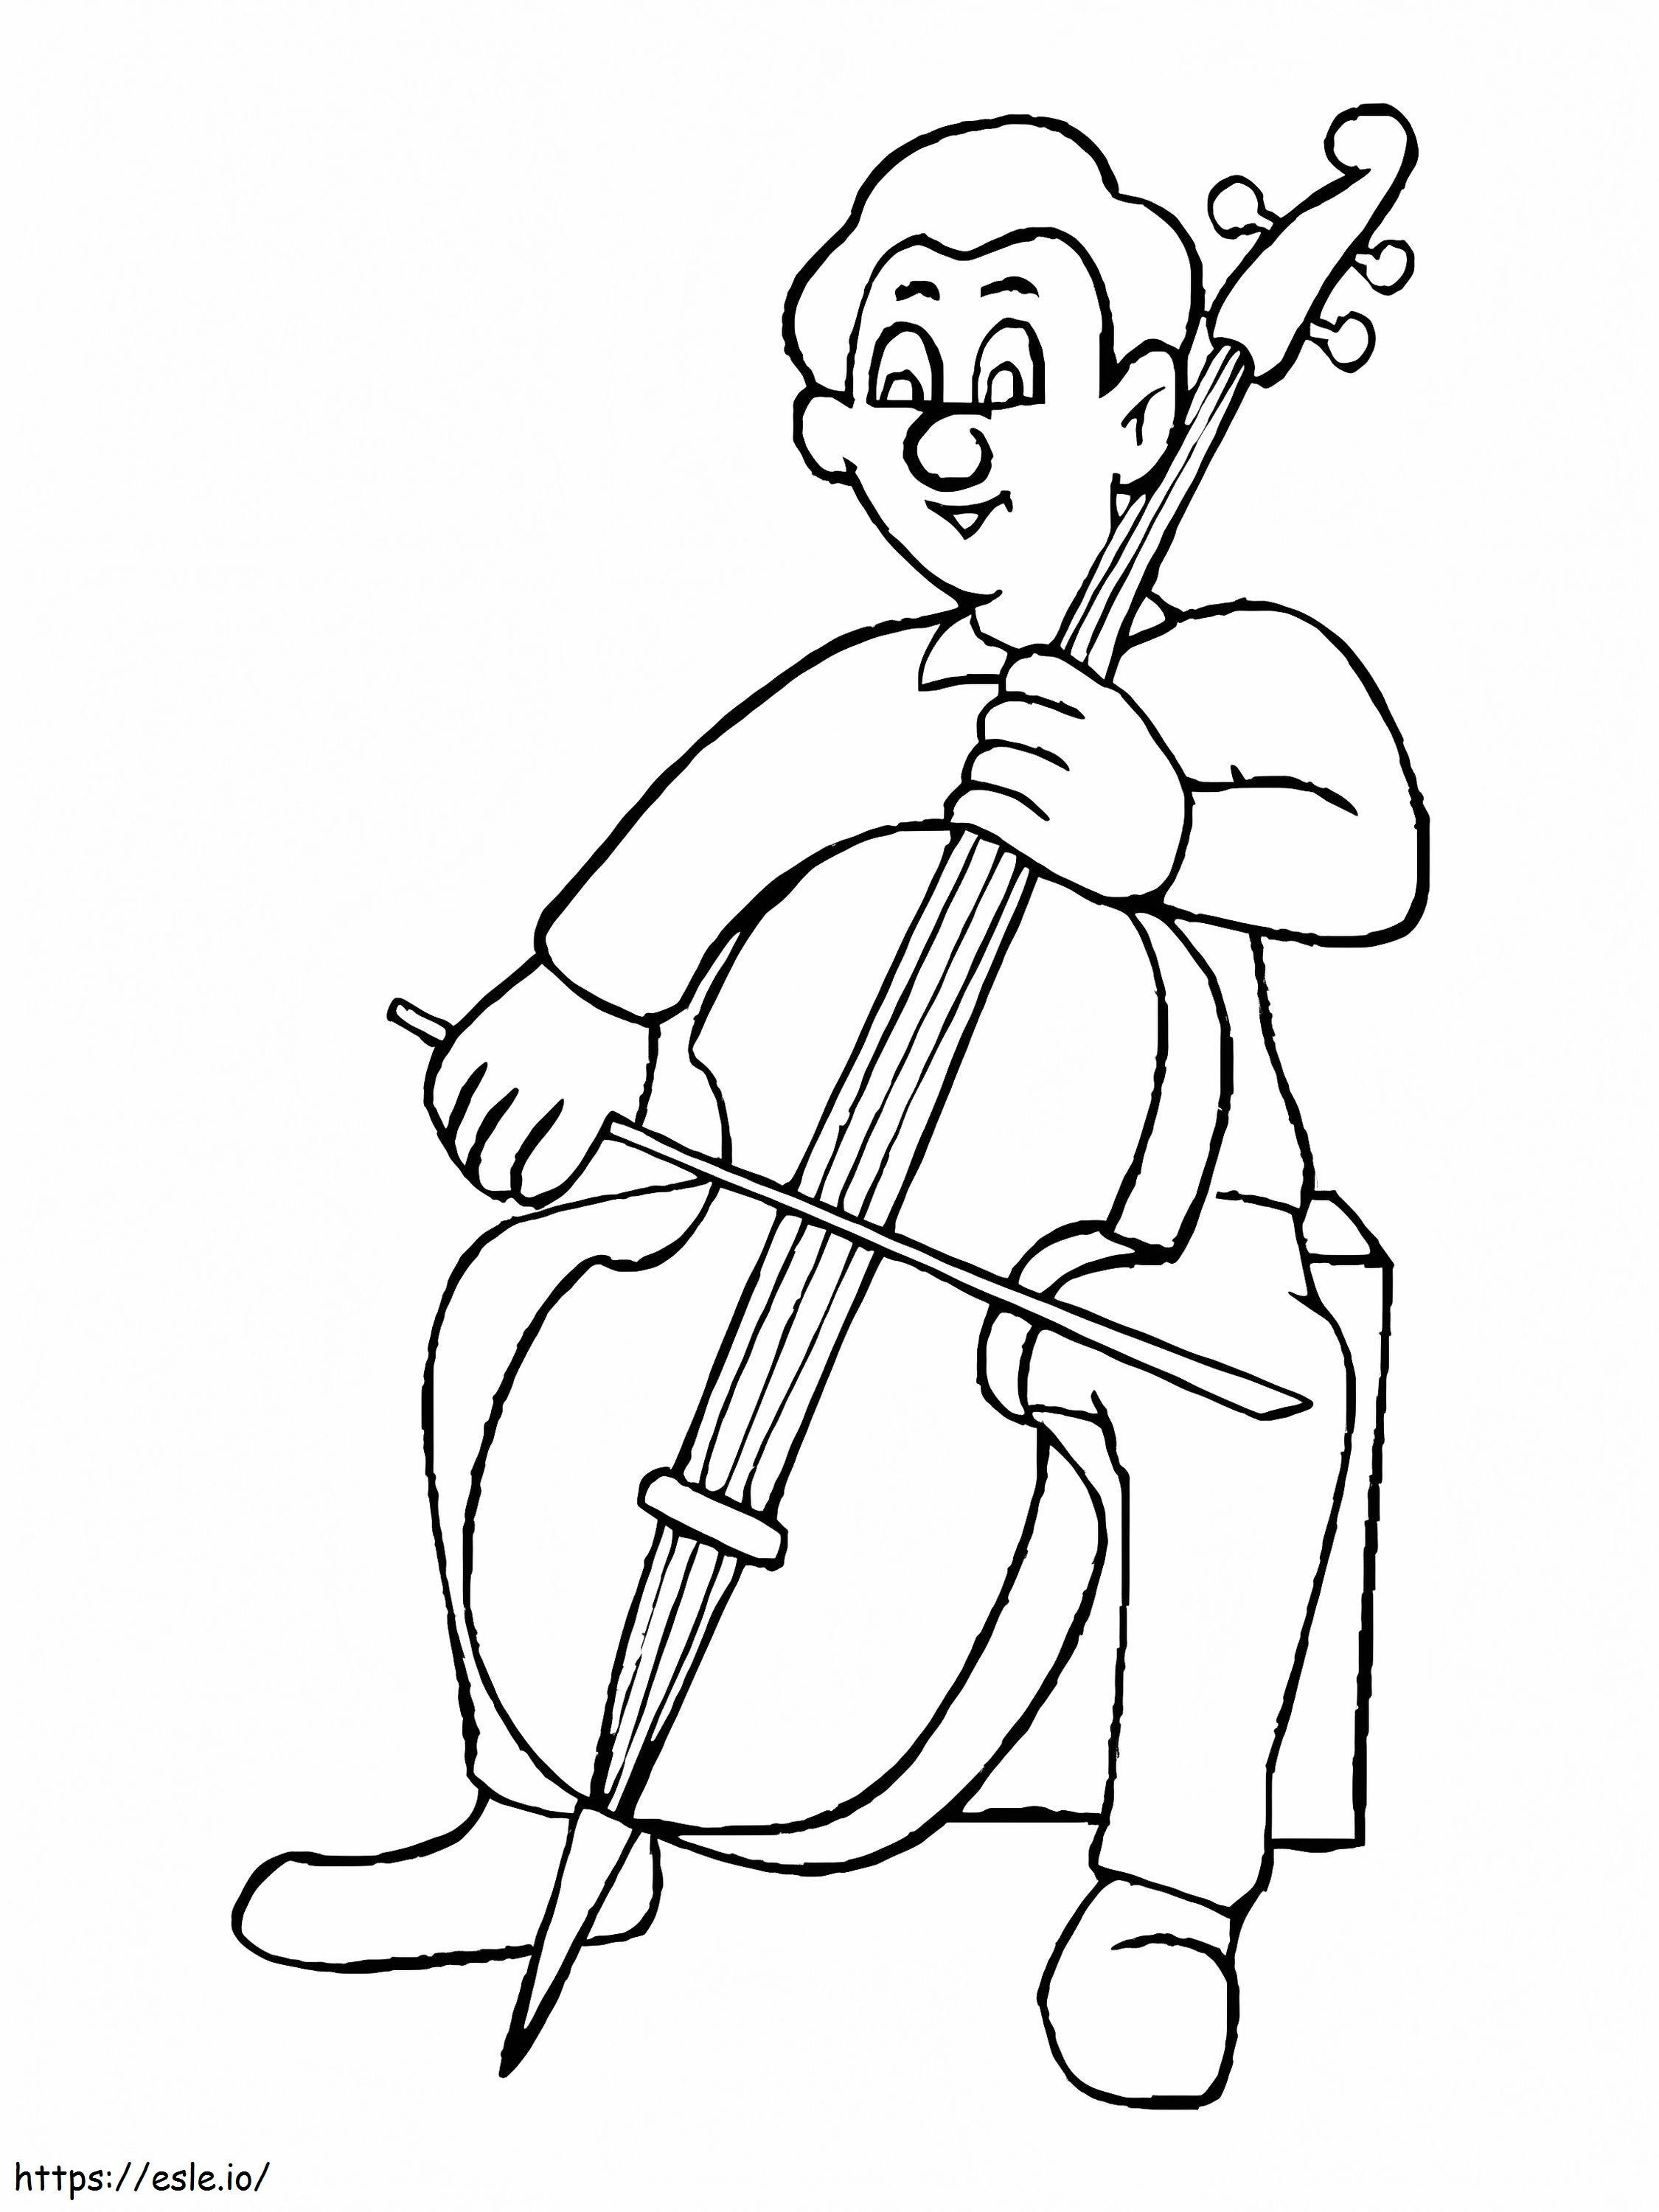 Hombre tocando violonchelo para colorear